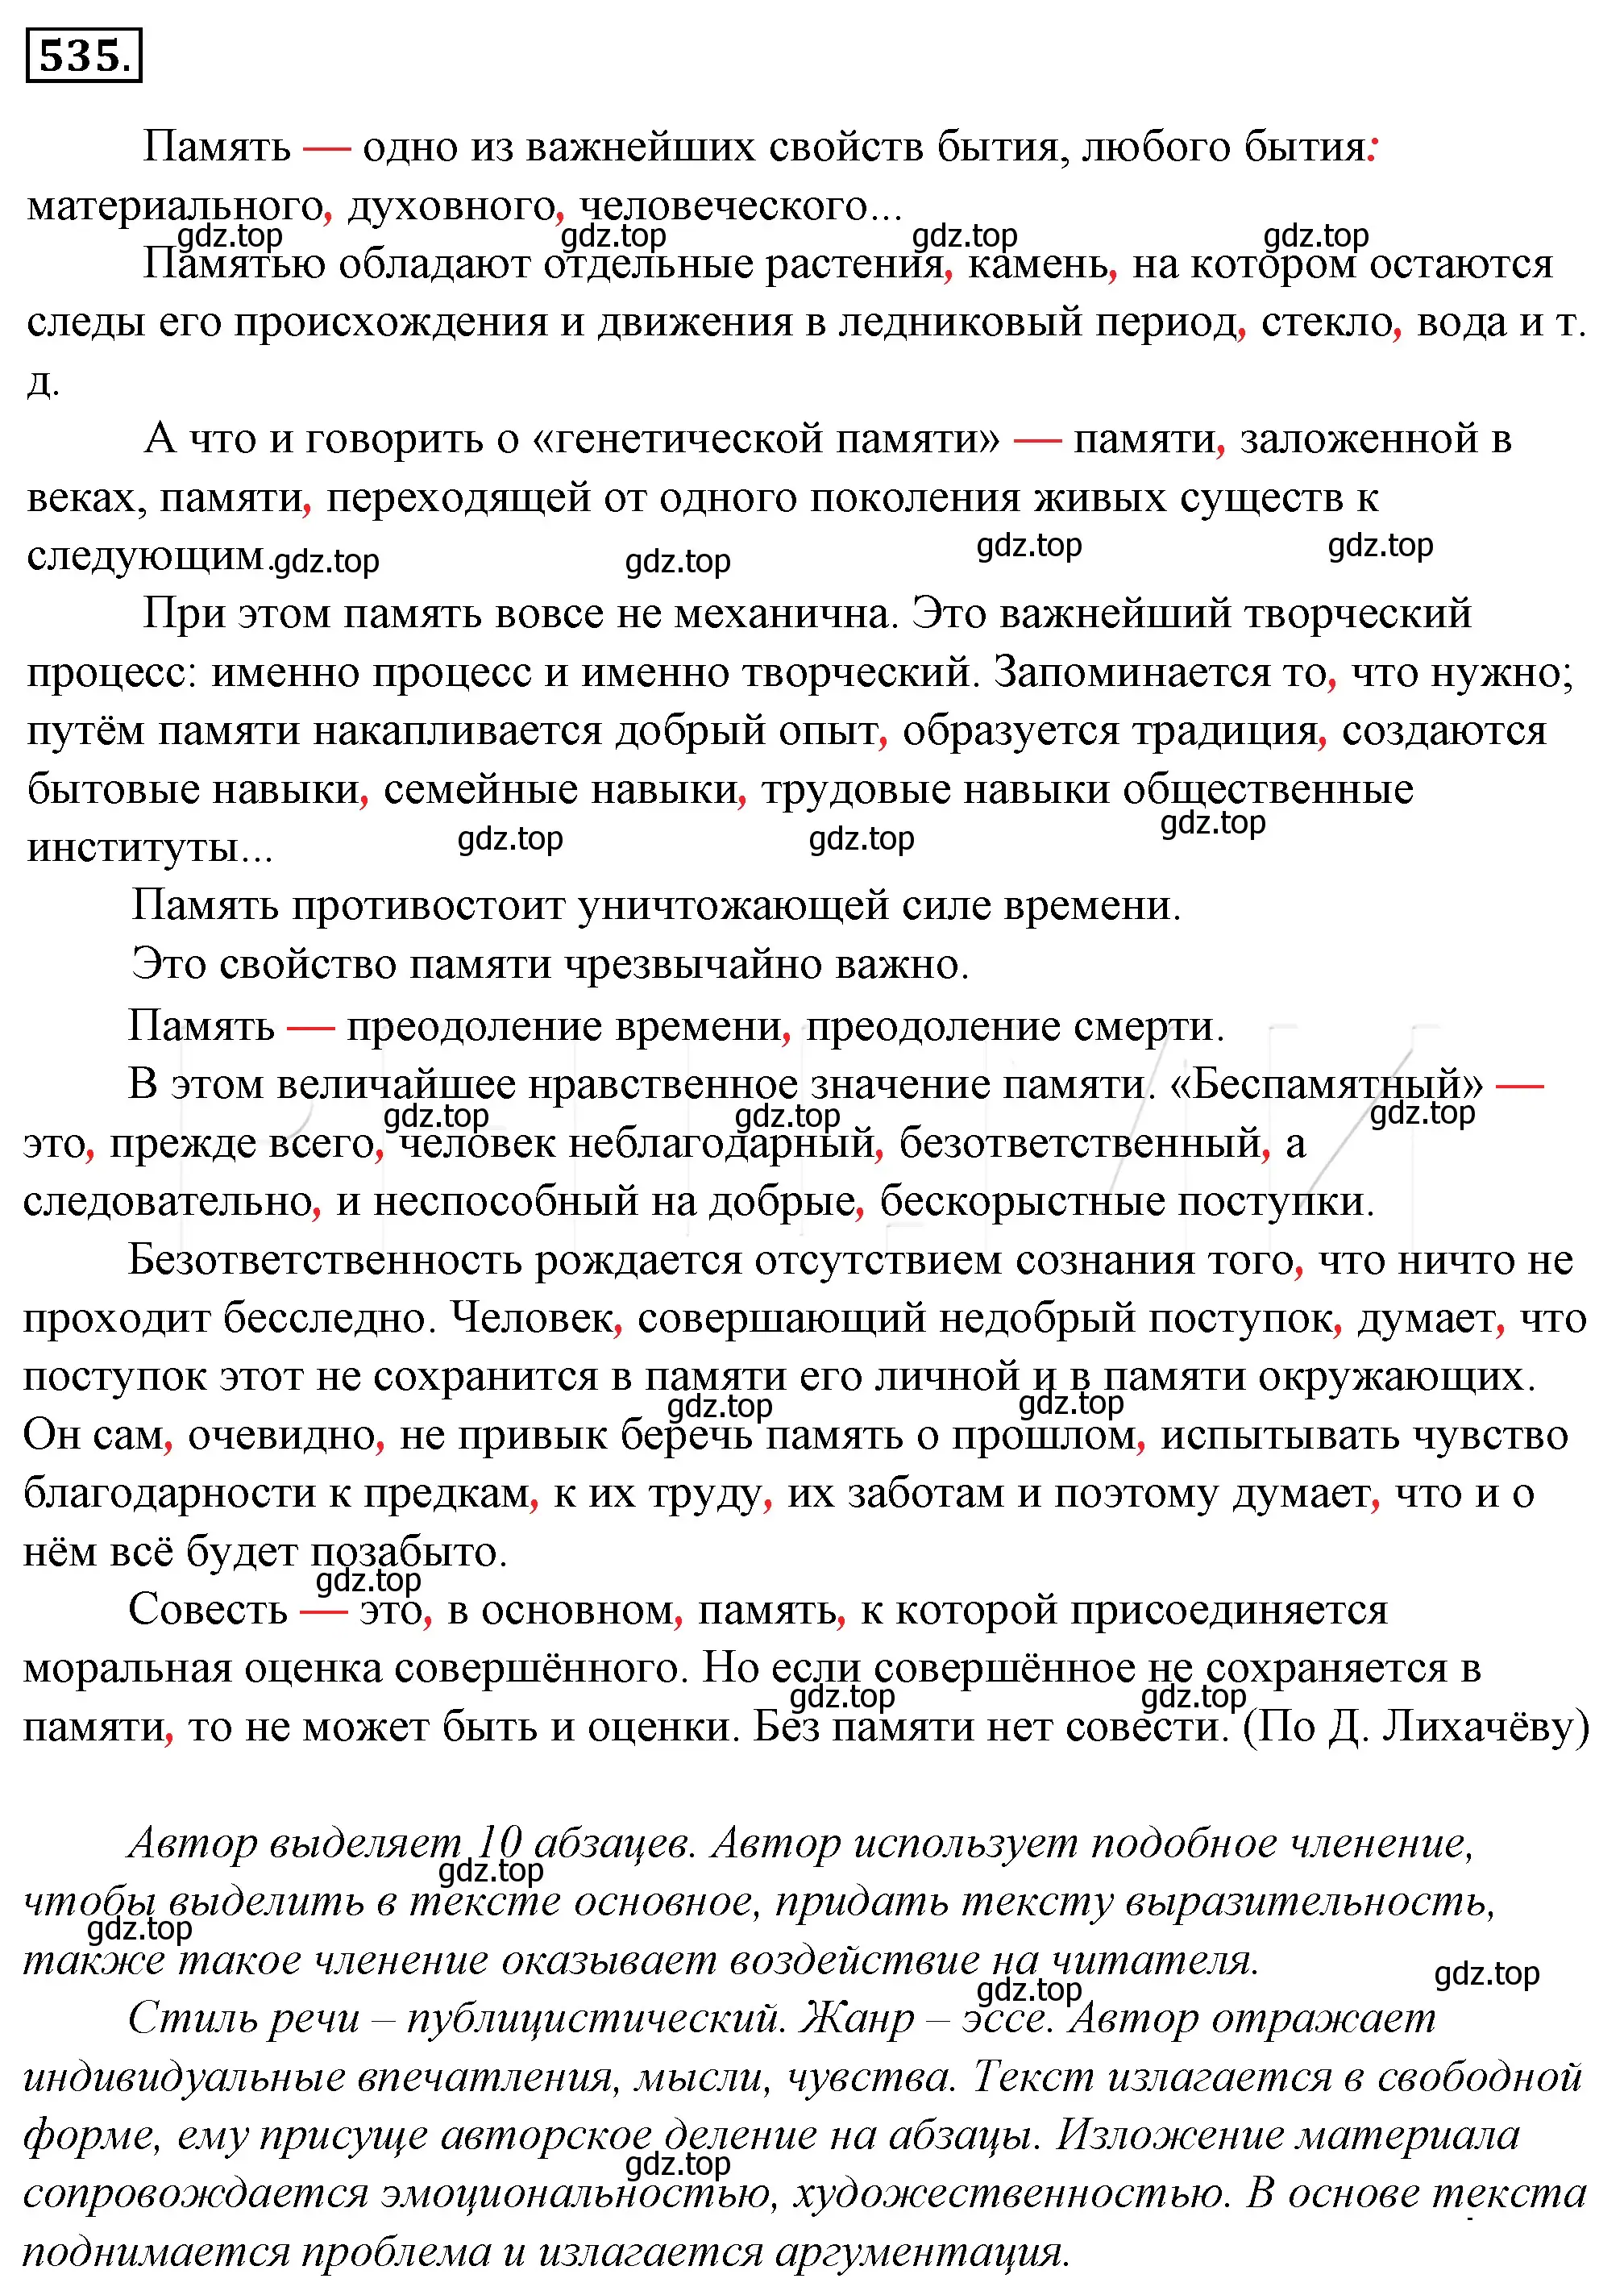 Решение 4. номер 211 (страница 292) гдз по русскому языку 10-11 класс Гольцова, Шамшин, учебник 2 часть